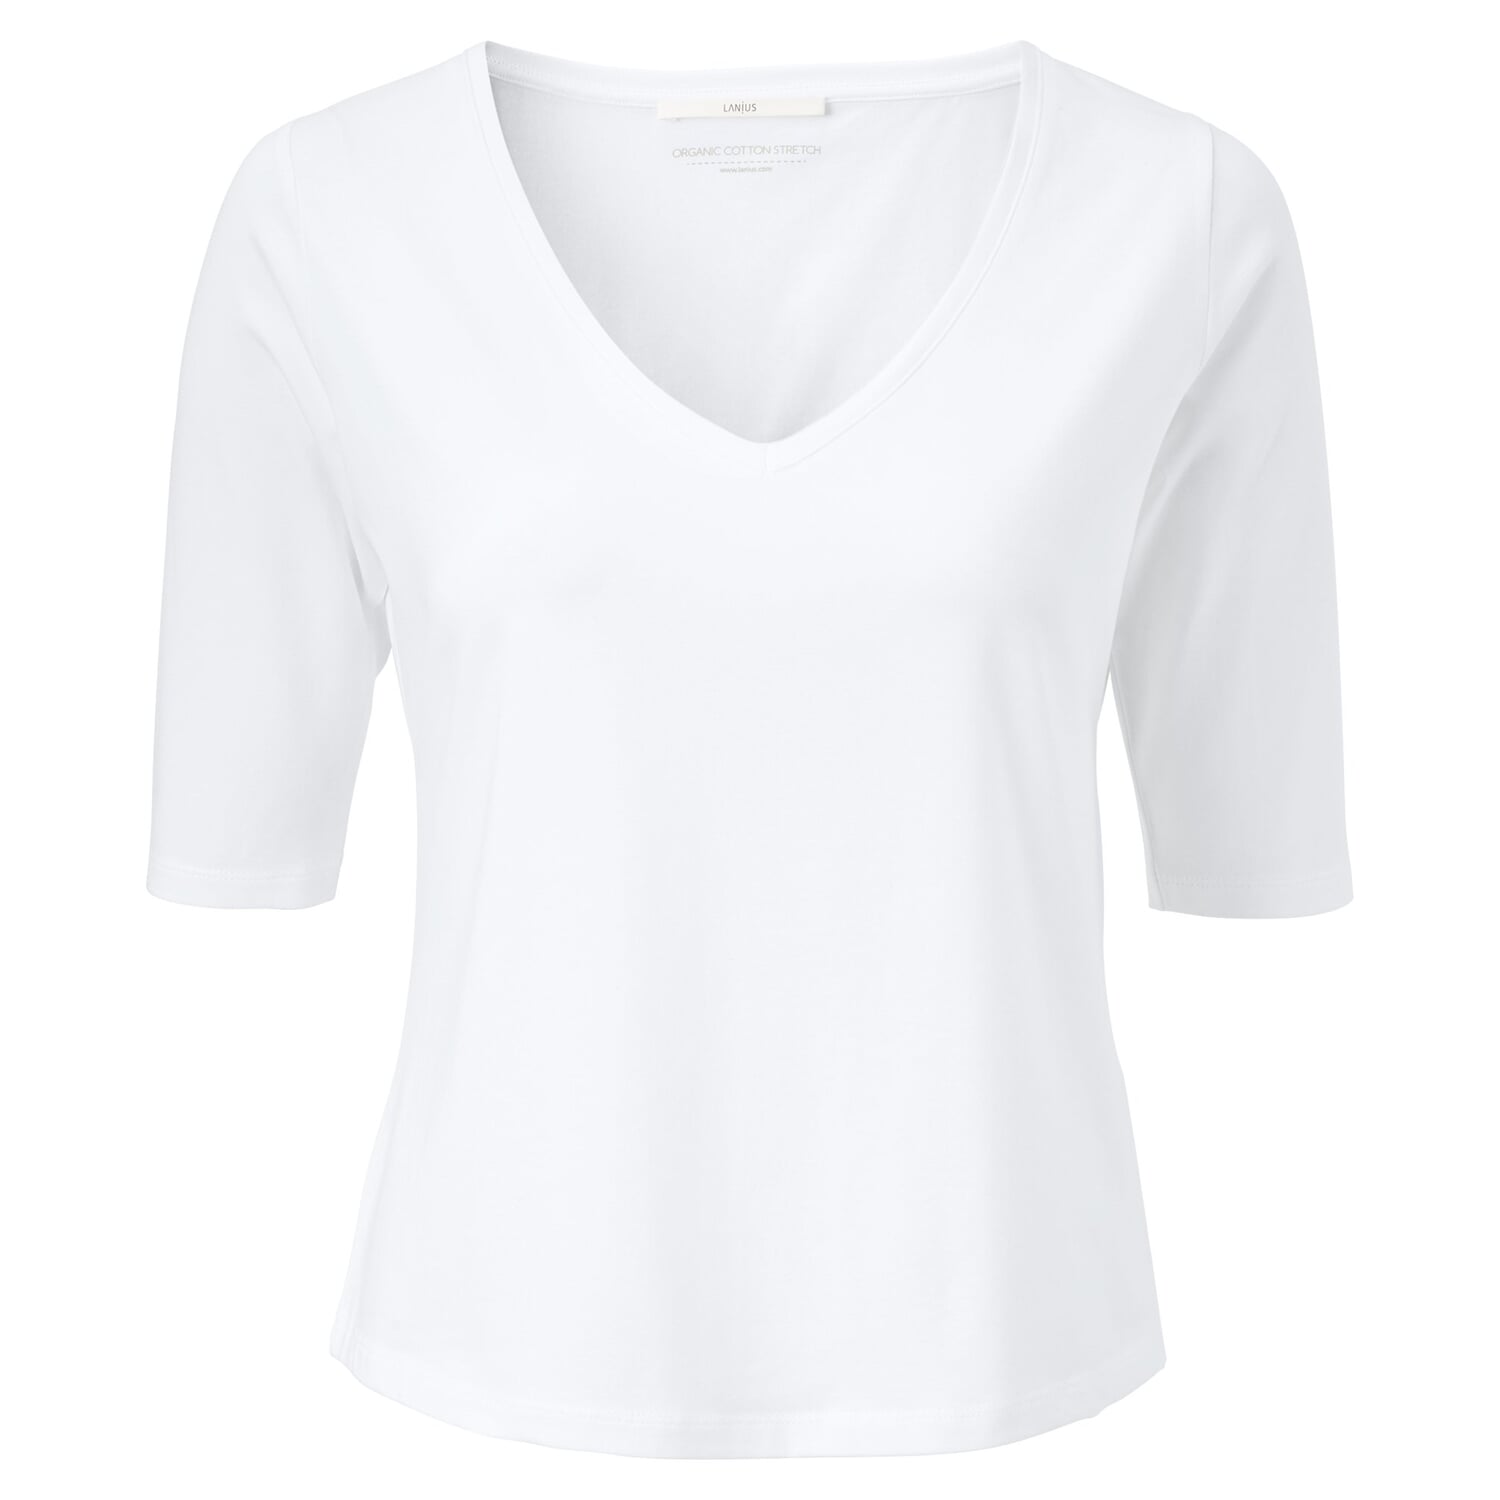 Goot Effectief Van toepassing Dames shirt V-hals, Wit | Manufactum